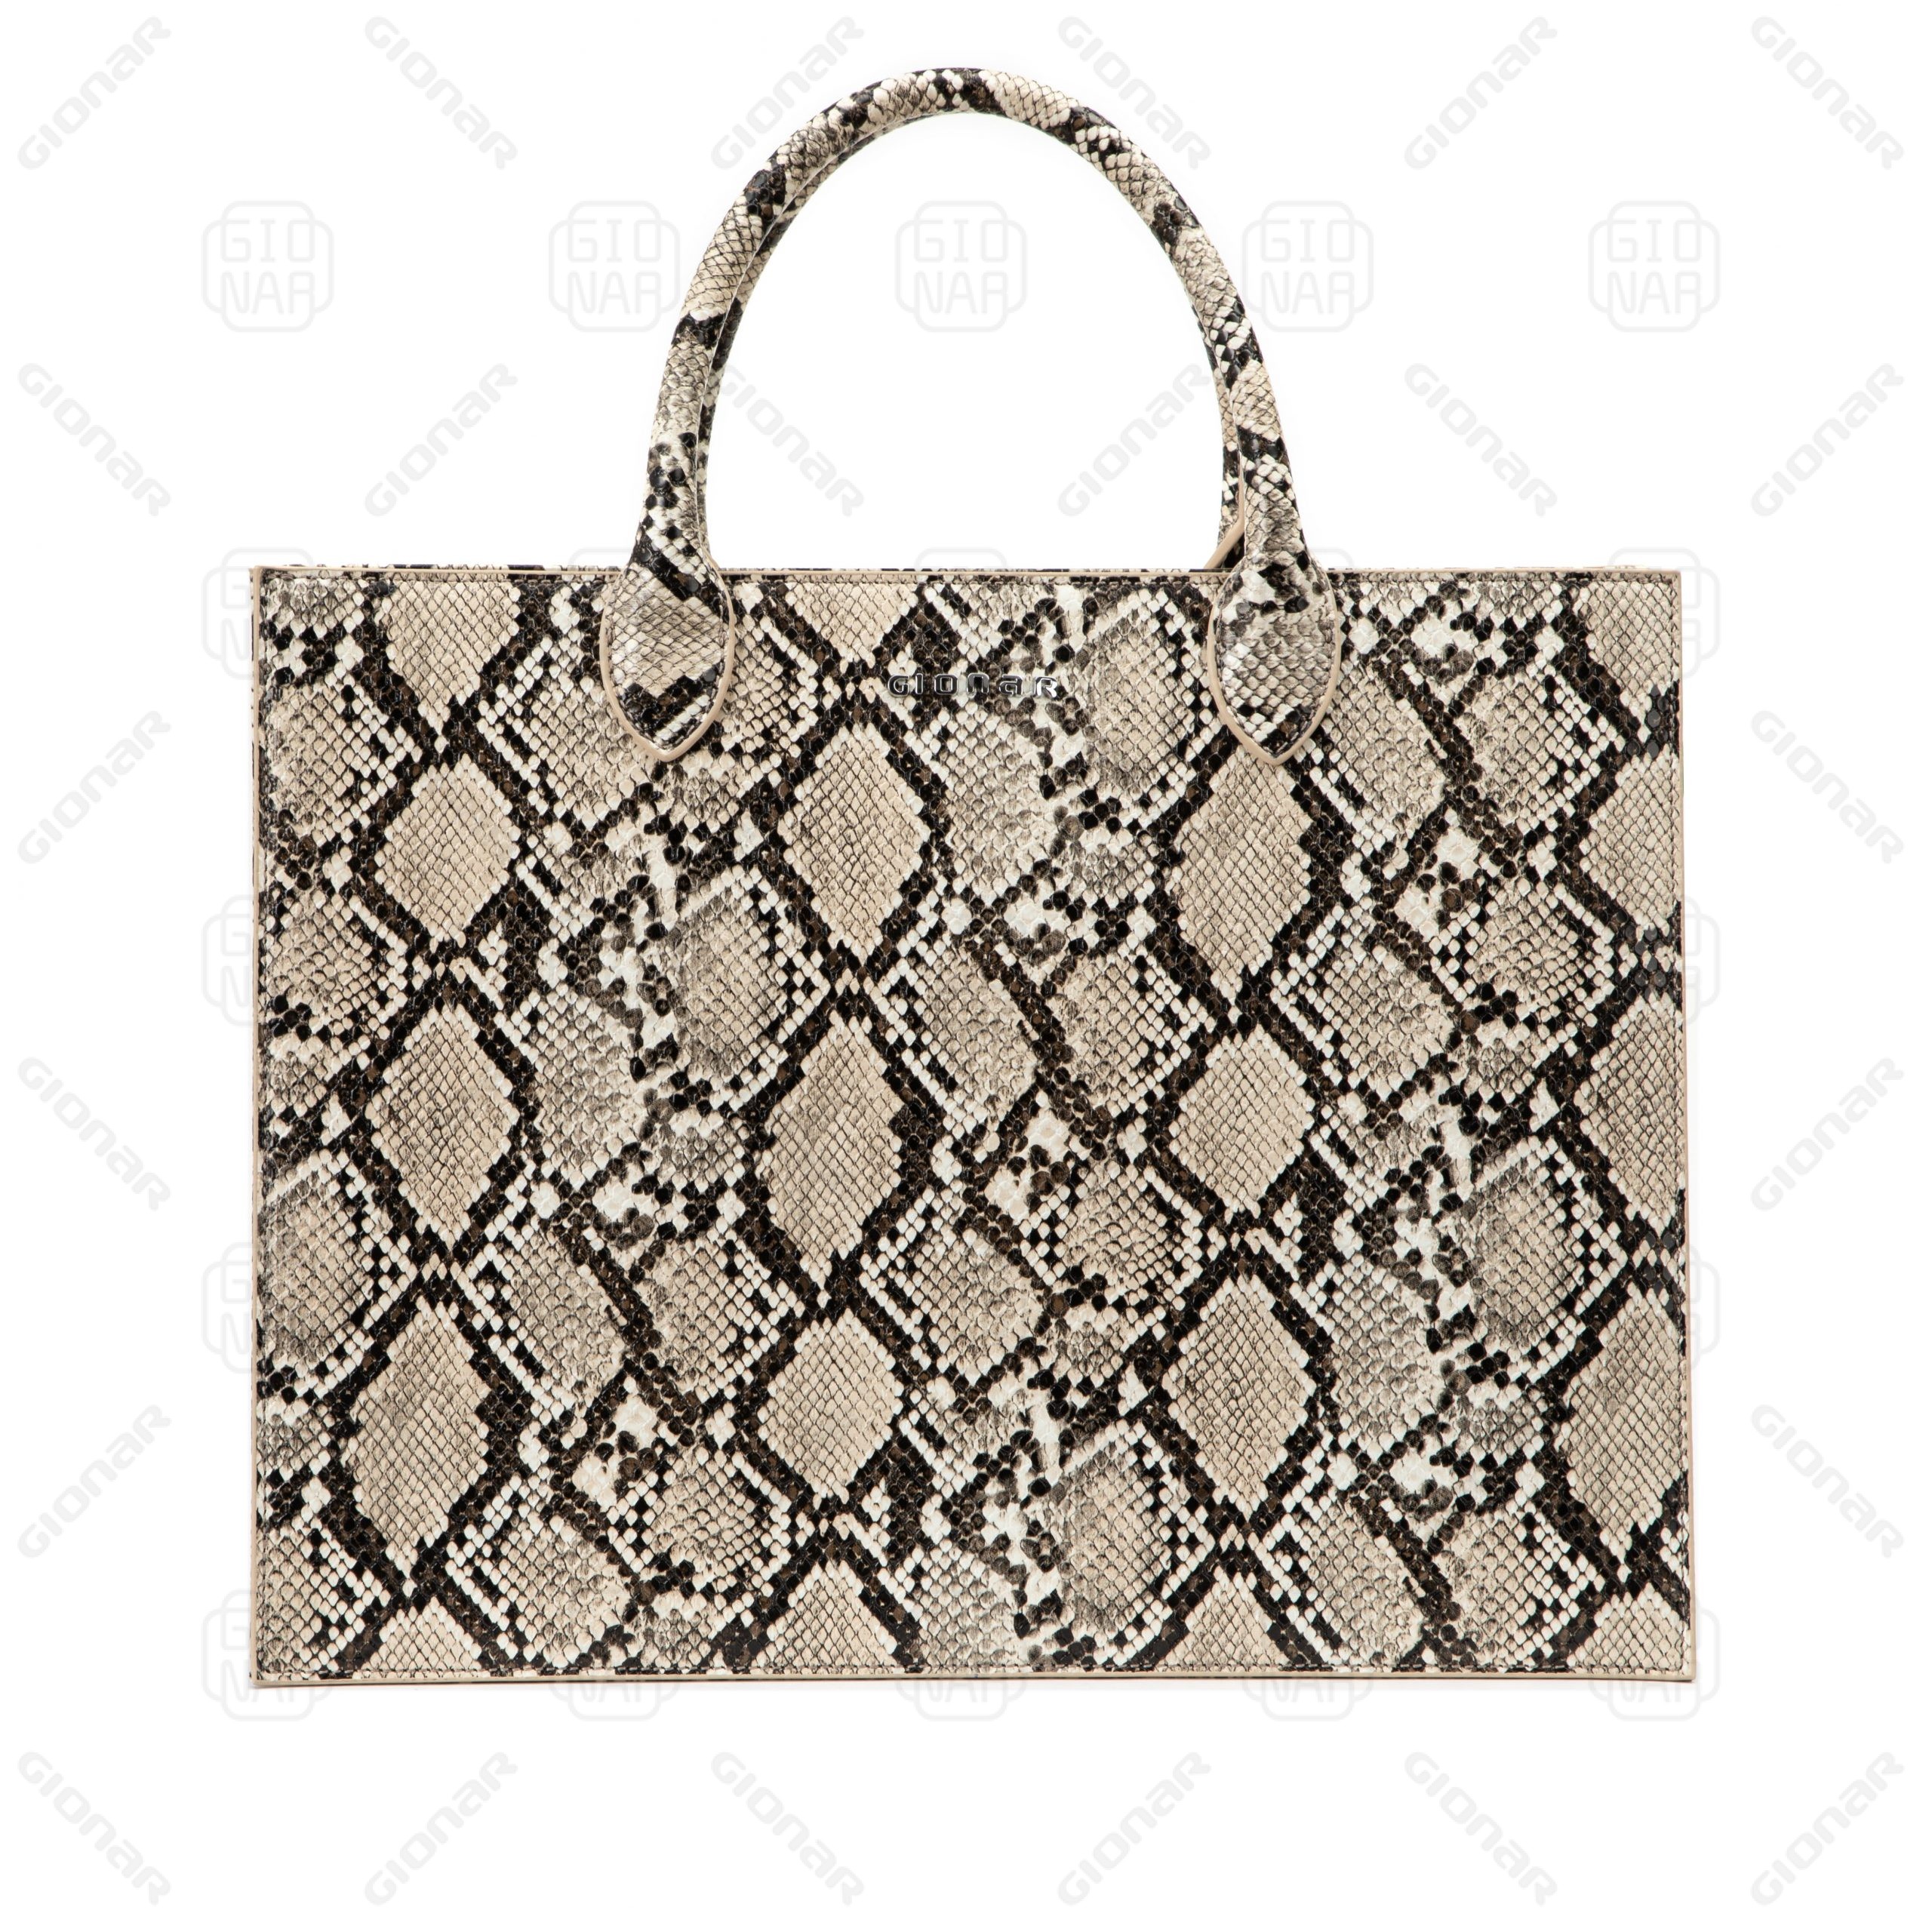 Snake Printing leather tote handbag